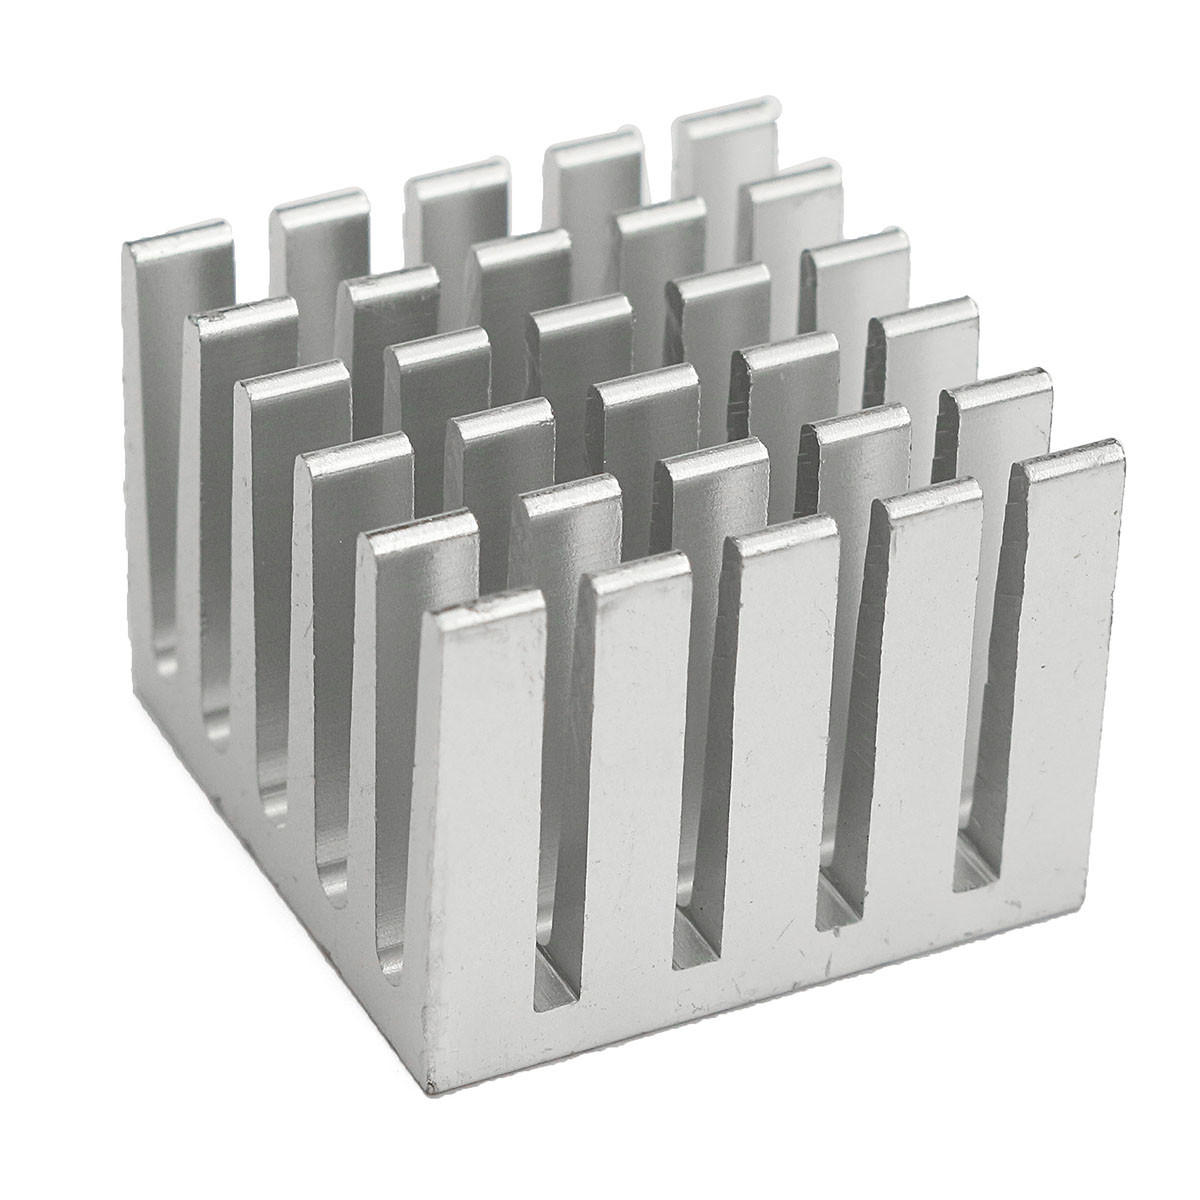 5 stuks 20x20x15mm dhz cpu ic chip koellichaam geëxtrudeerde koeler aluminium koellichaam